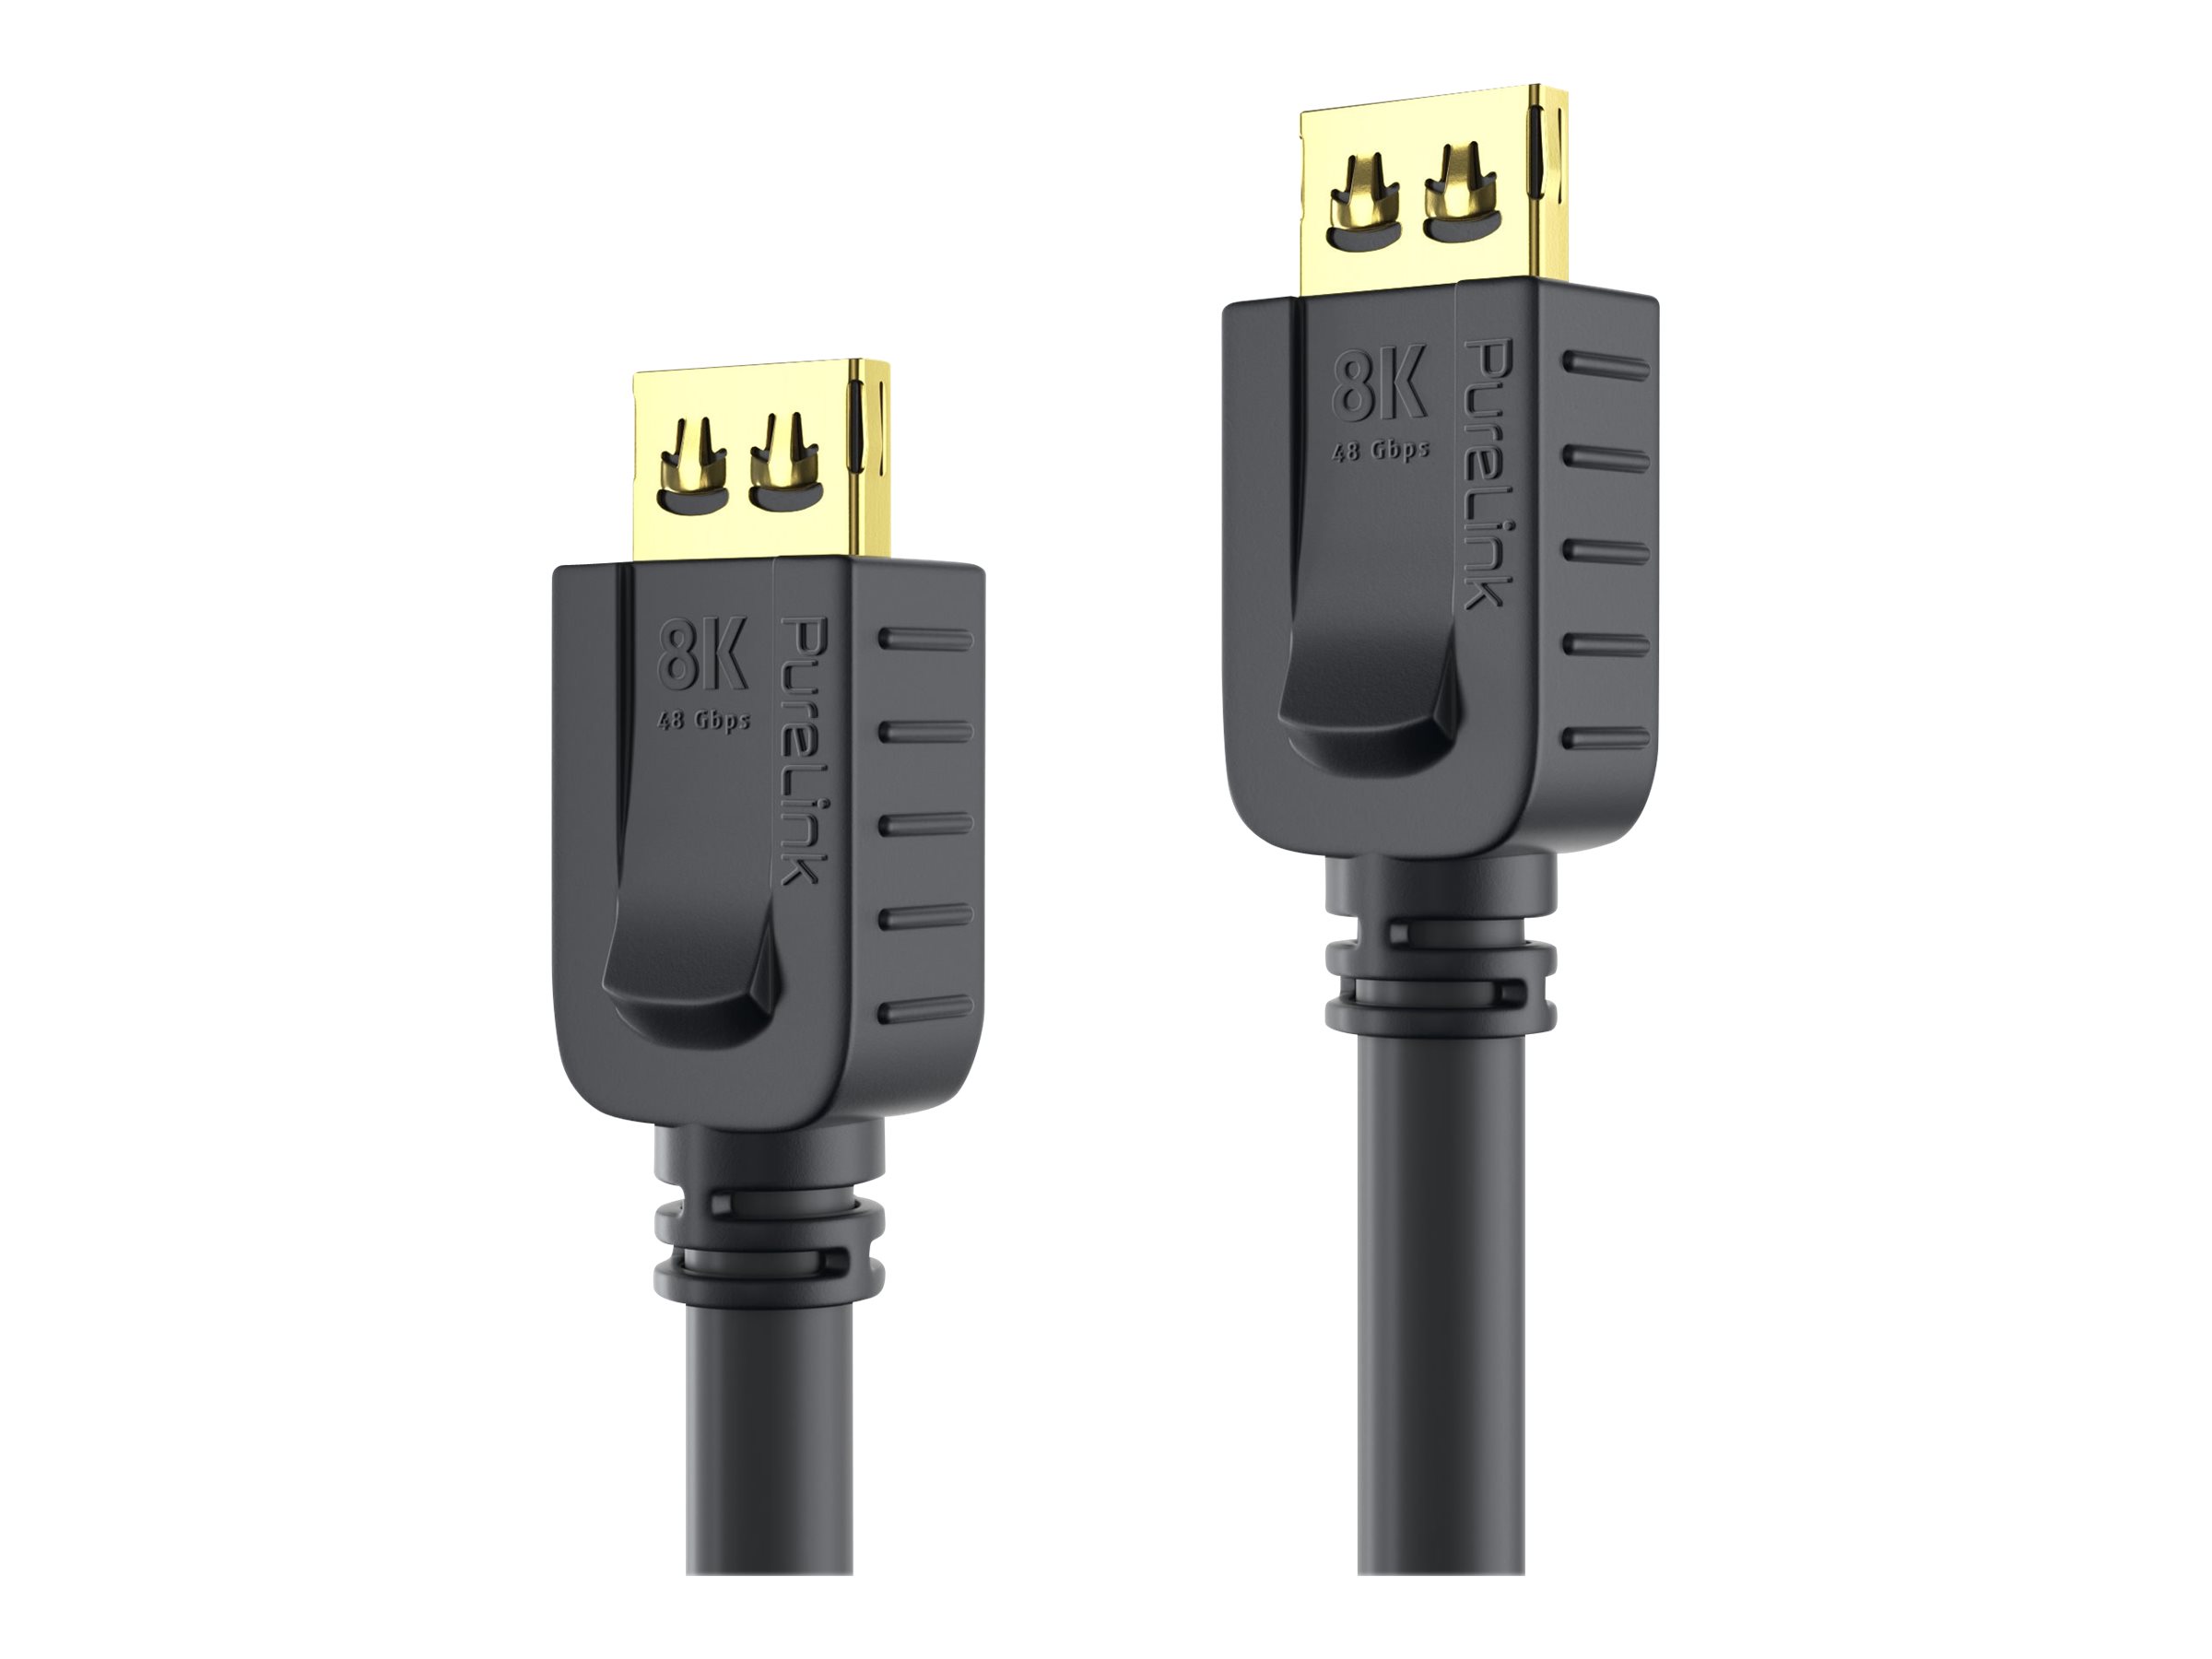 PureLink PureInstall Series - Ultra High Speed - HDMI-Kabel mit Ethernet - HDMI männlich Verriegelung zu HDMI männlich Verriegelung - 1.5 m - Dreifachisolierung - Schwarz - rund, unterstützt 8K 60 Hz (7680 x 4320)